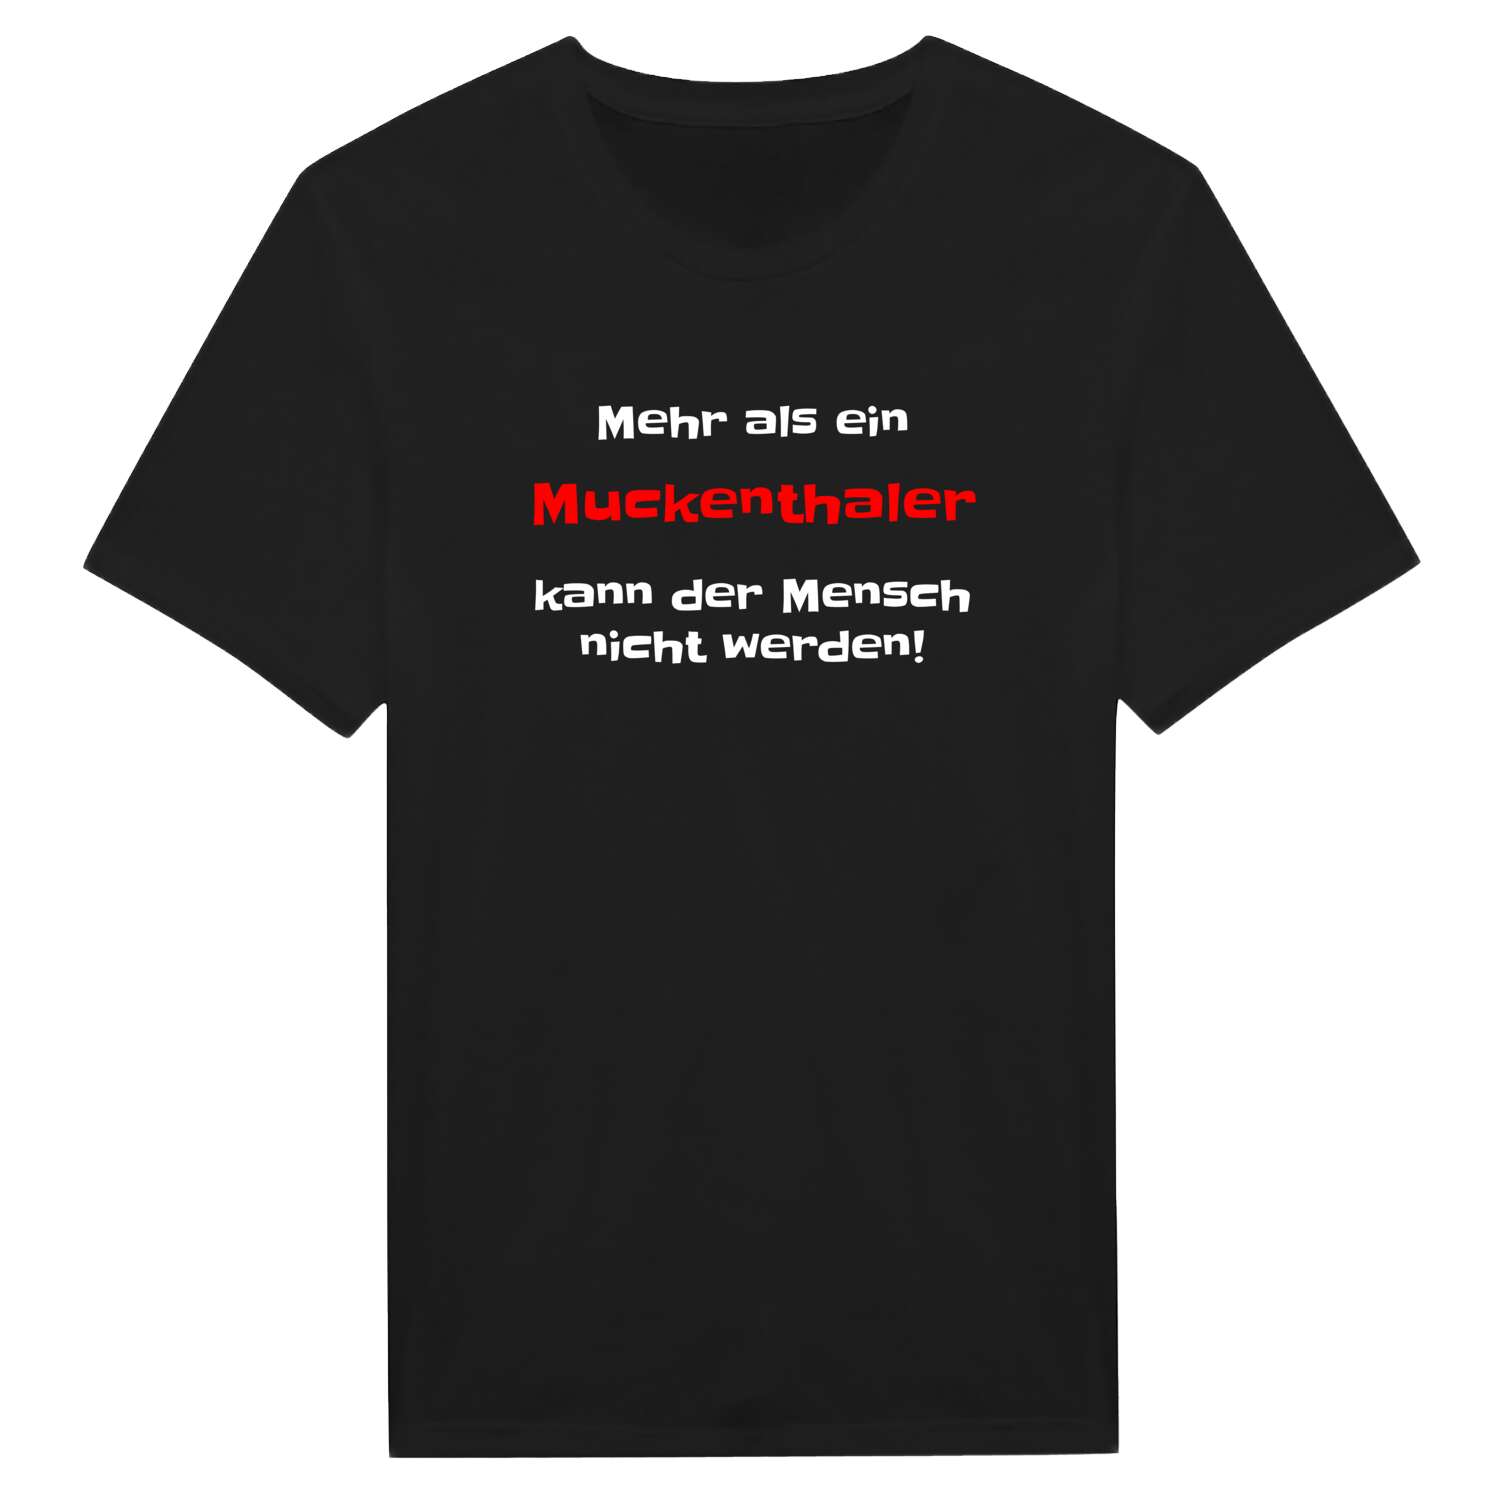 Muckenthal T-Shirt »Mehr als ein«